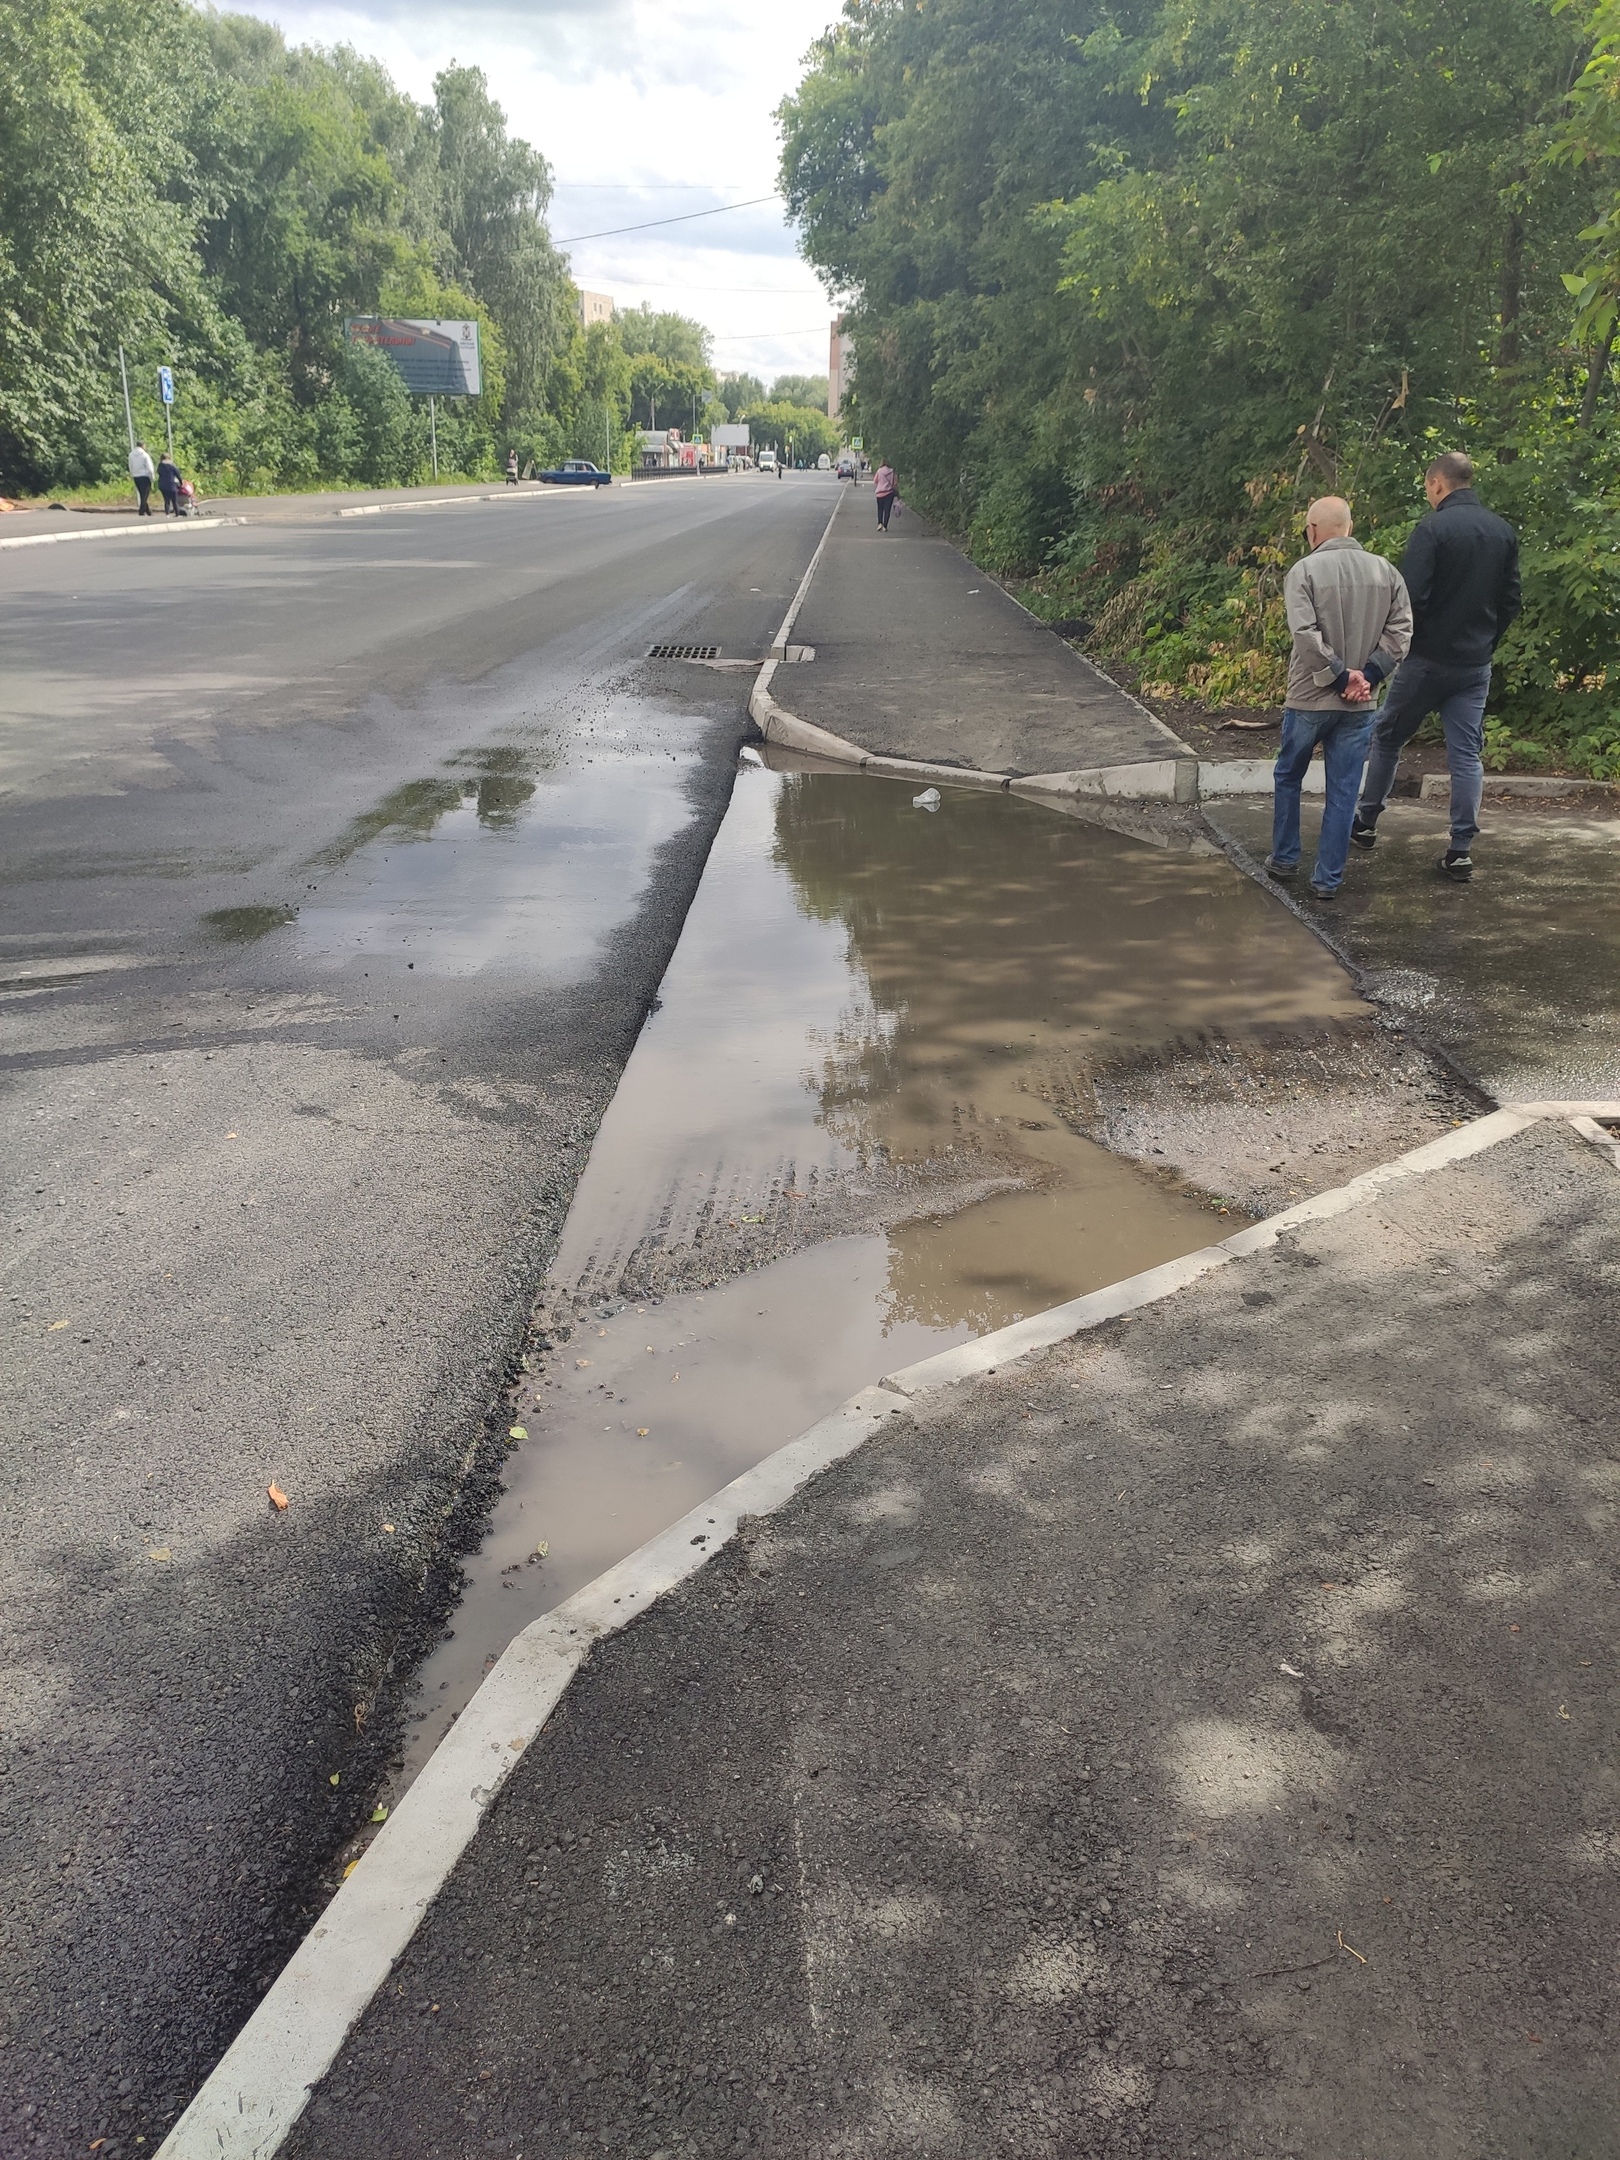 Омичи раскритиковали ремонт улицы Бархатовой, после которого стало затапливать дорогу #Новости #Общество #Омск